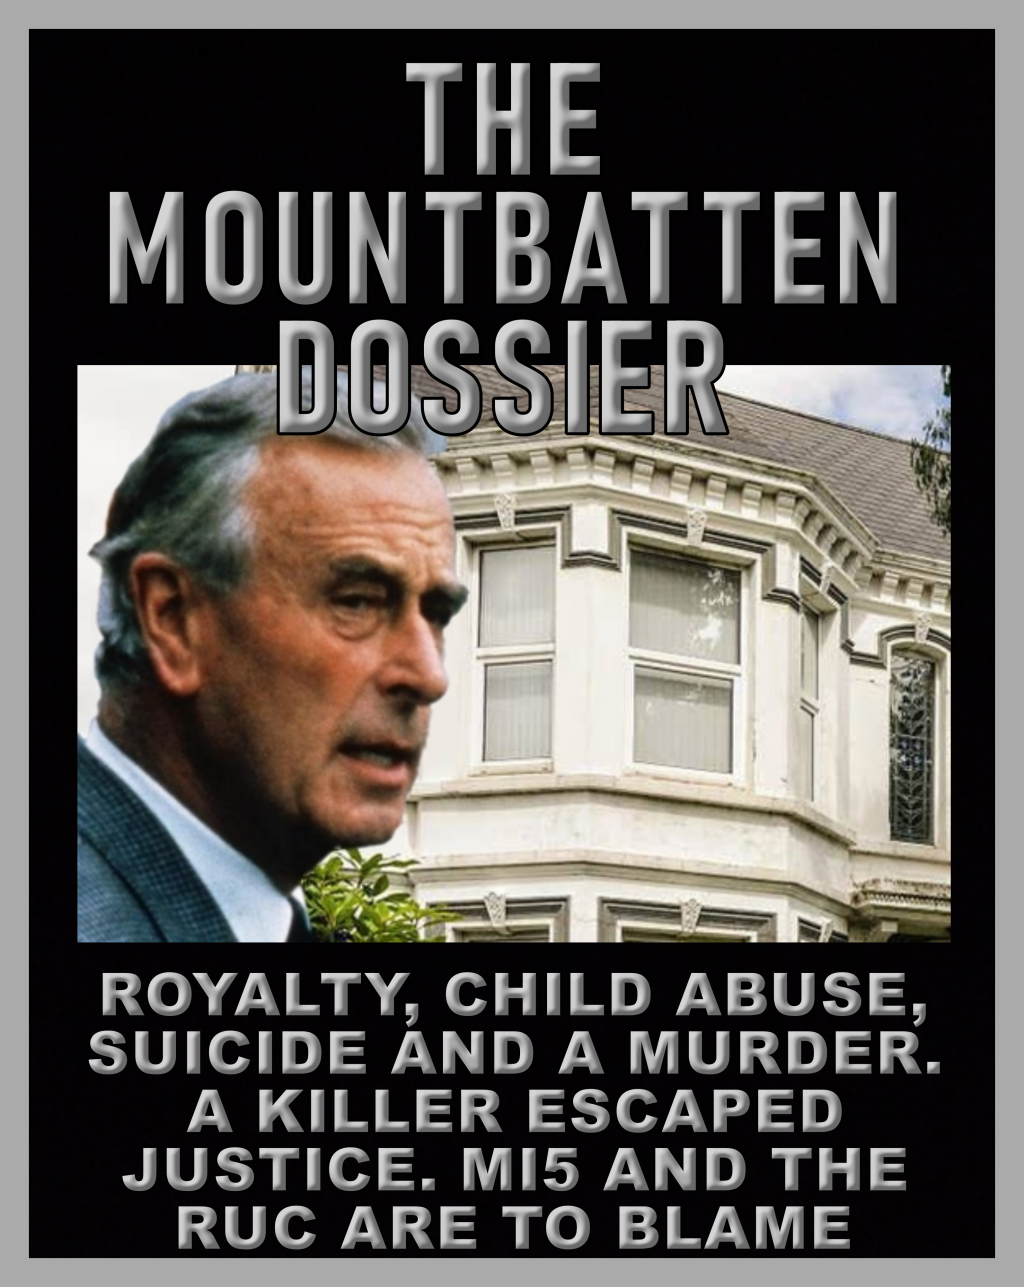 The Mountbatten dossier, an ebook by David Burke.